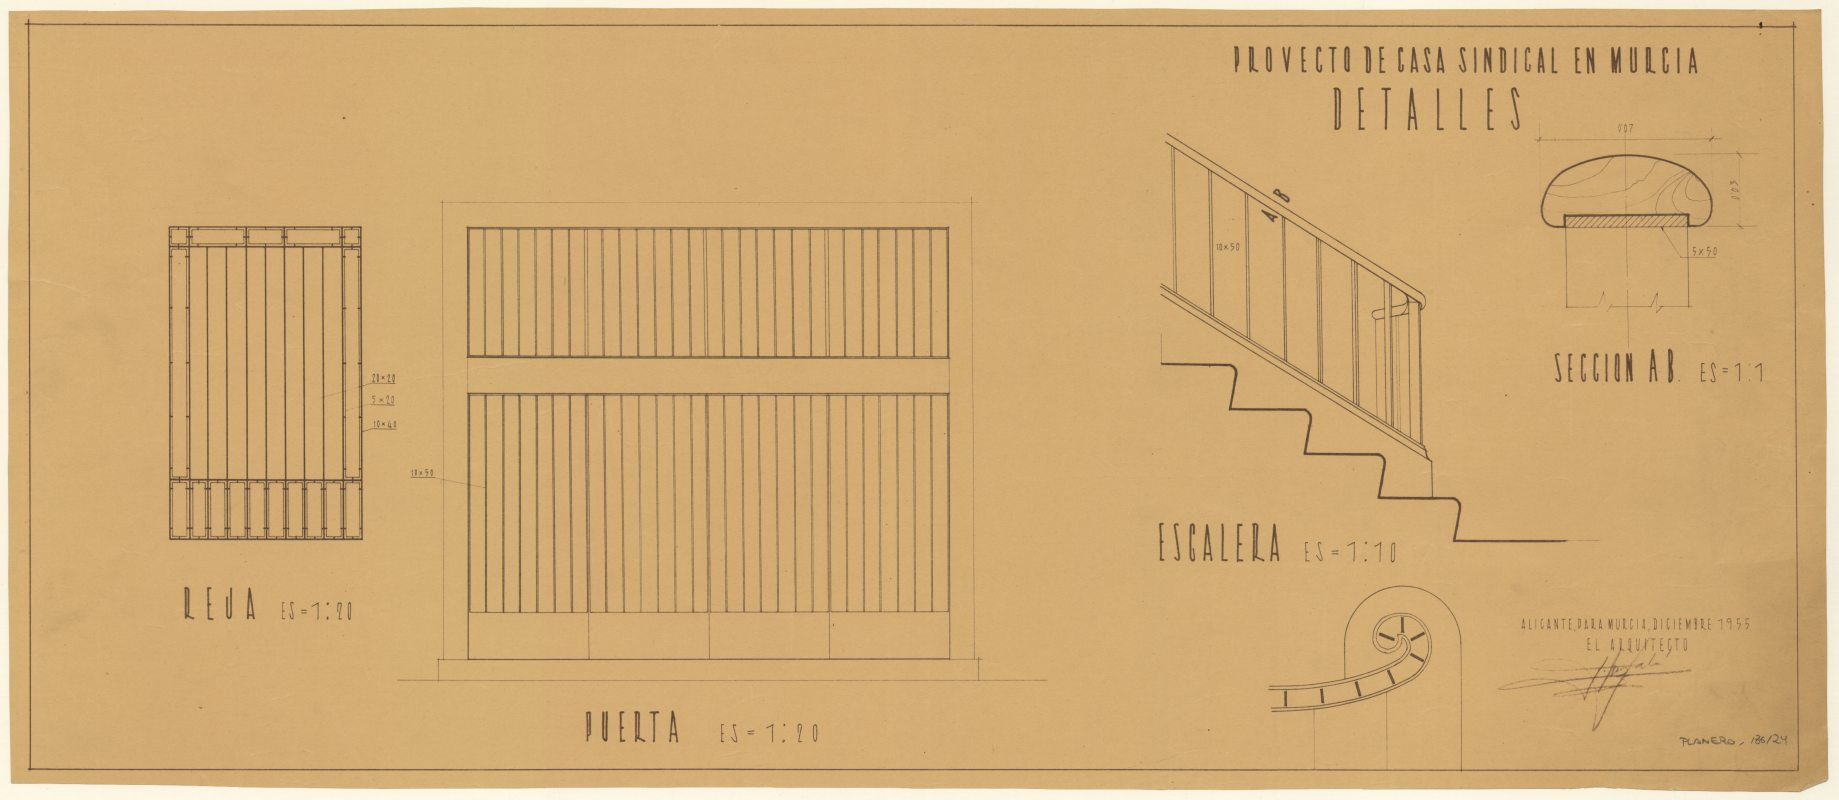 Plano de la Casa Sindical de Murcia, sita en la Calle Santa Teresa. Detalles escalera.